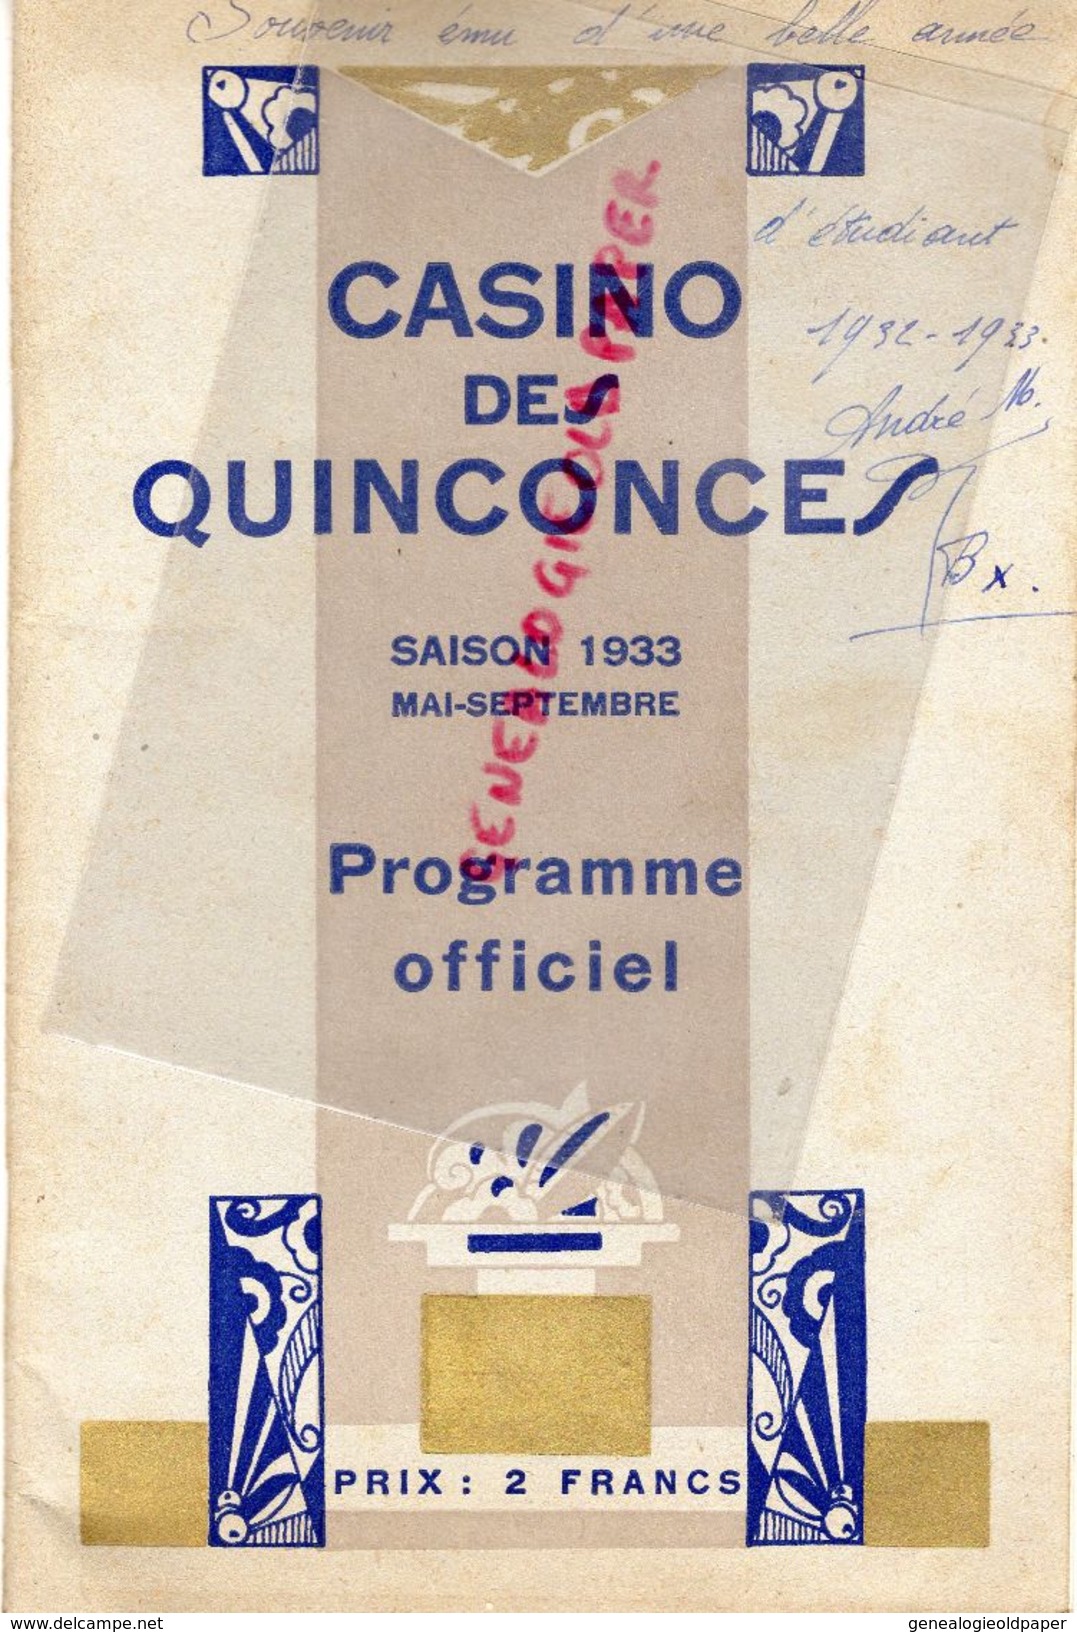 33- BORDEAUX- RARE PROGRAMME OFFICIEL CASINO DES QUINCONCES-1933-HOTCHKISS-TREBUC-LATASTE-VALMY-VALAIRE-NERCY-STEVILLE- - Programmes